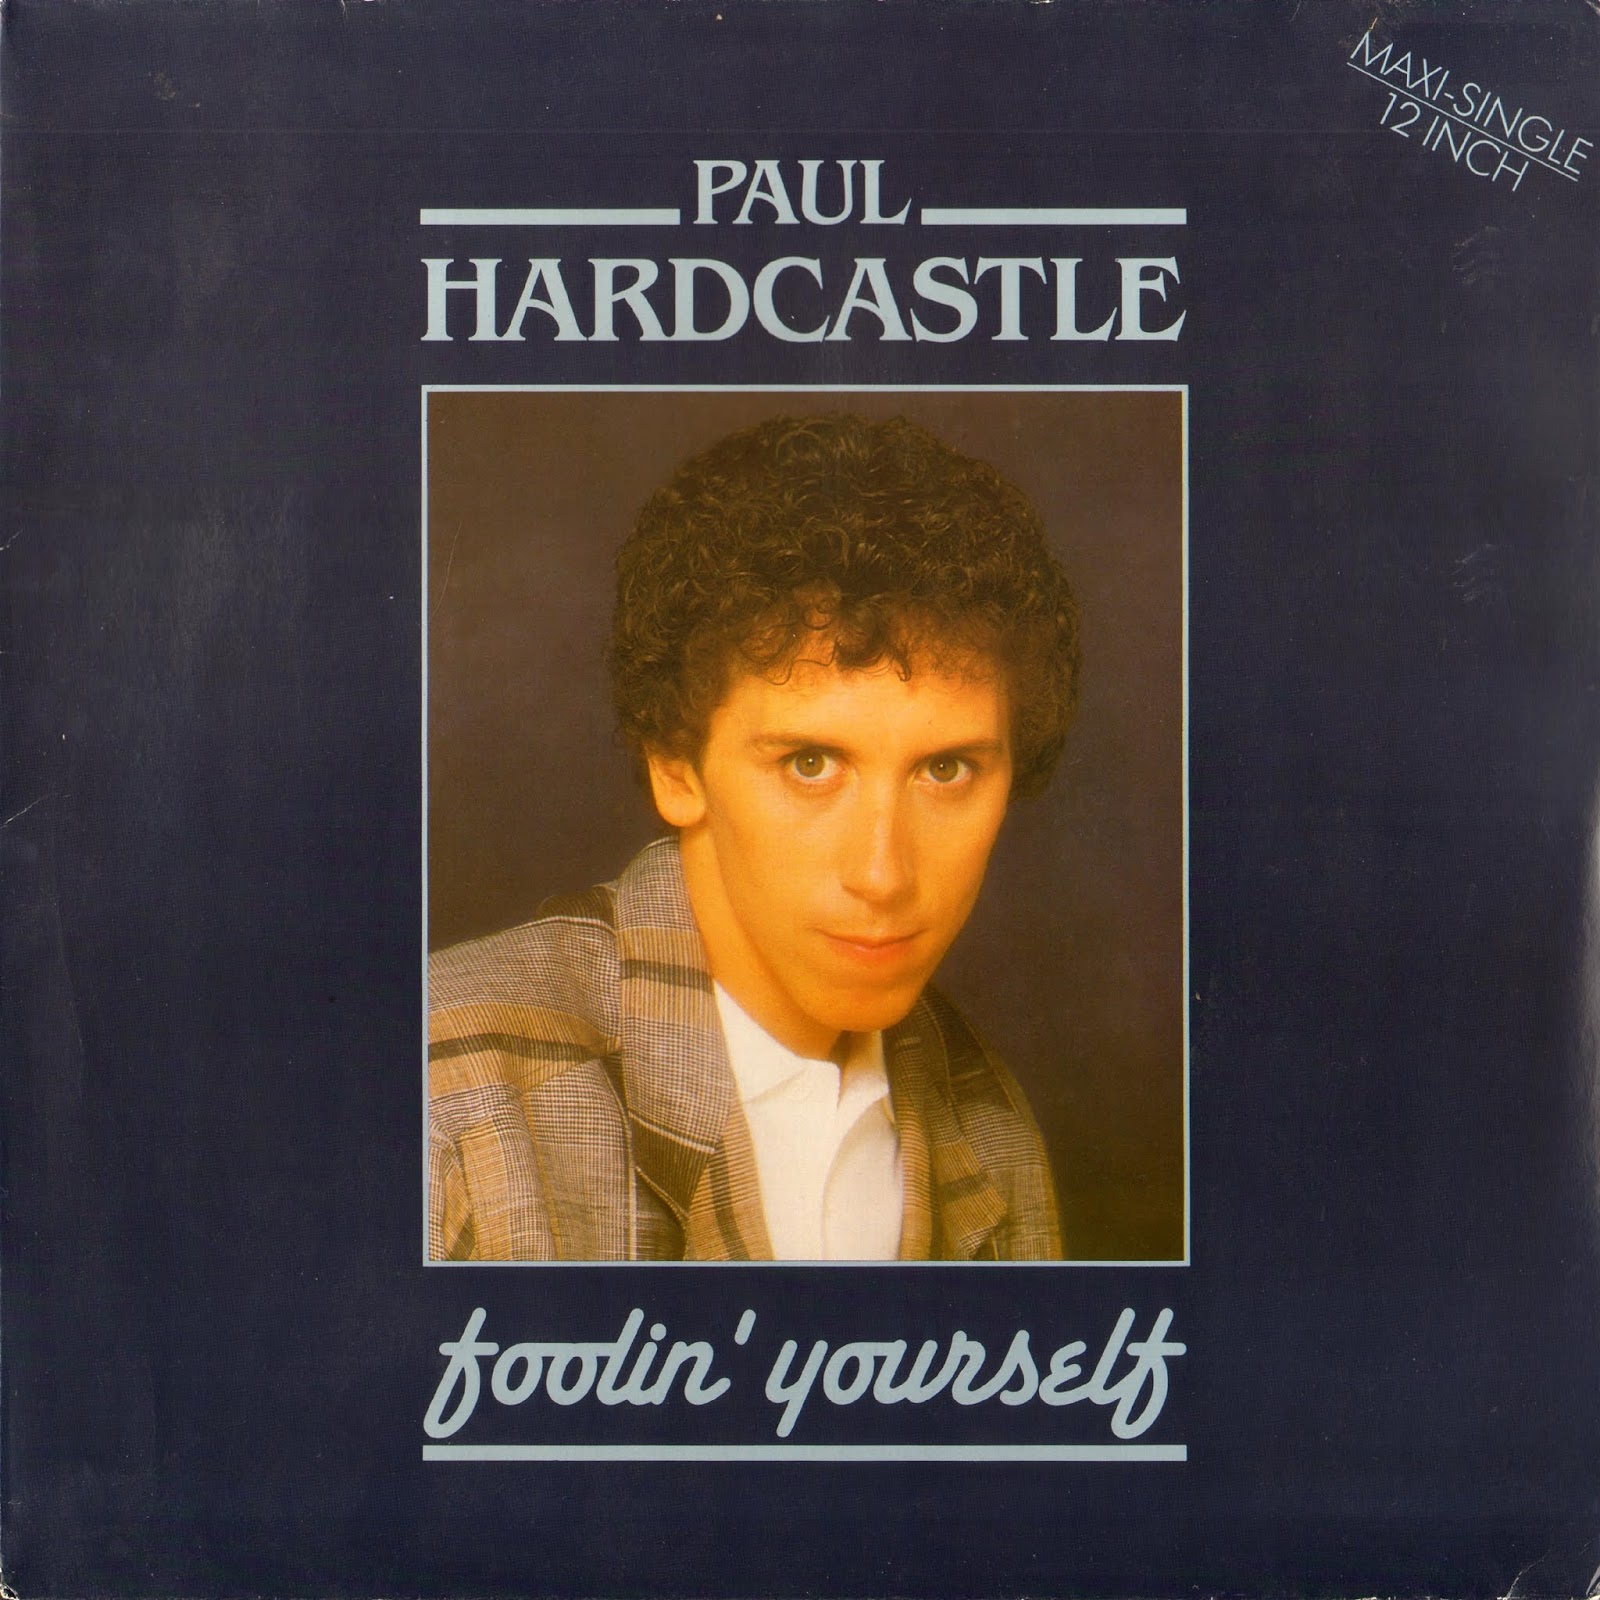 Paul hardcastle. Paul Hardcastle кто это. Paul Hardcastle Maxine Hardcastle 2019 фото альбома. Обложки для mp3 фото Paul Hardcastle - moments in time.